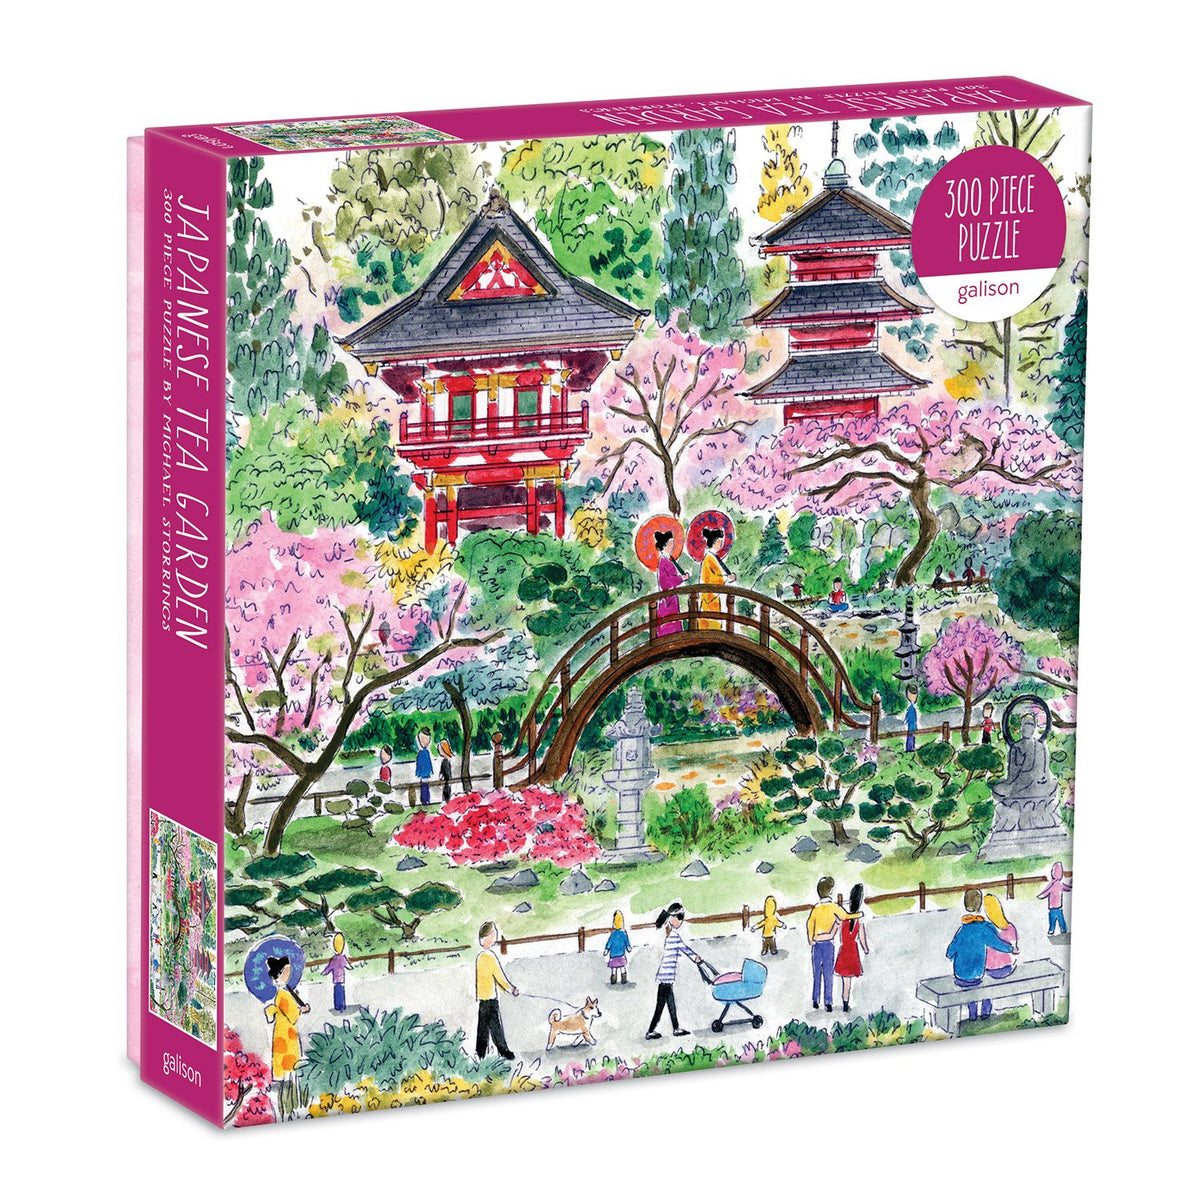 Michael Storrings Japanese Tea Garden 300 Piece Puzzle 300 Piece Puzzles Galison 